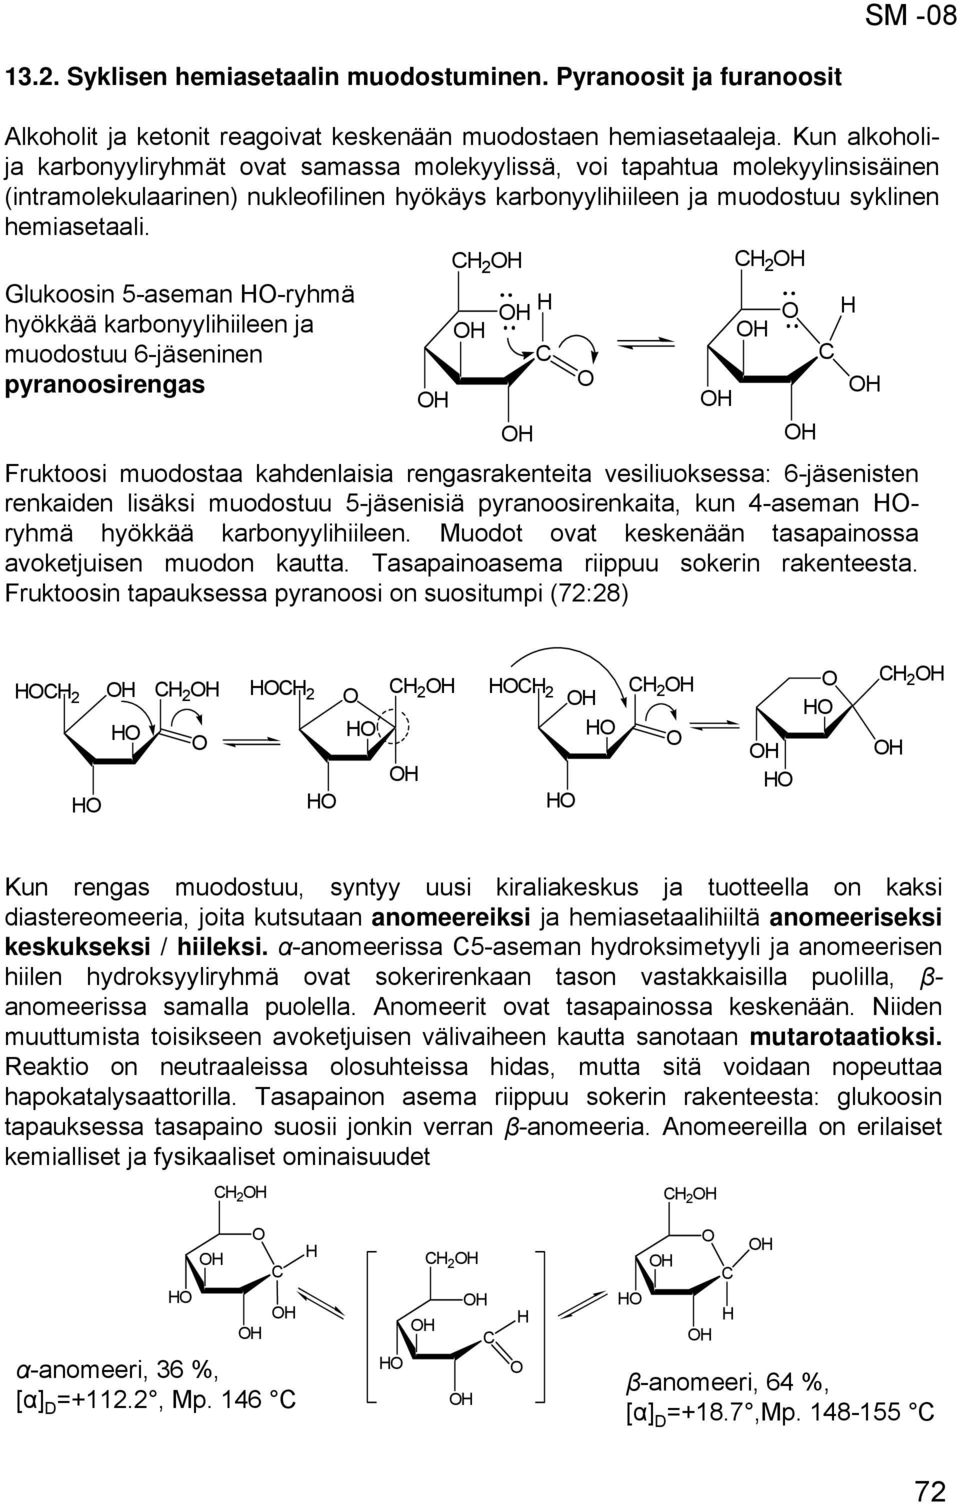 2 2 Glukoosin 5-aseman -ryhmä hyökkää karbonyylihiileen ja muodostuu 6-jäseninen pyranoosirengas Fruktoosi muodostaa kahdenlaisia rengasrakenteita vesiliuoksessa: 6-jäsenisten renkaiden lisäksi